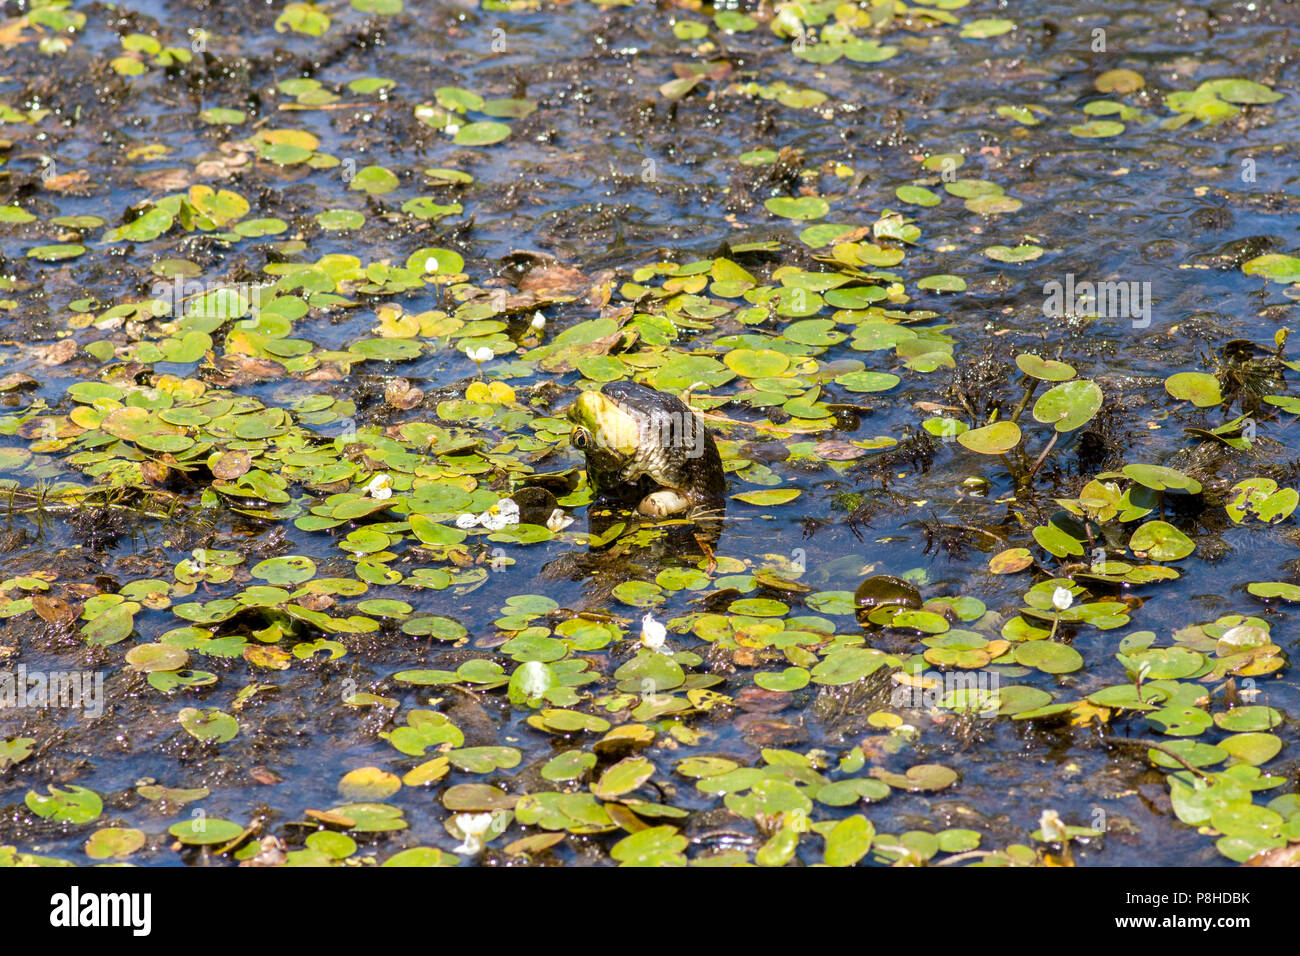 Eine nördliche Wasser Schlange (Nerodia sipedon) Fütterung auf einen grünen Frosch (Lithobates clamitans) in einem Sumpf. Stockfoto